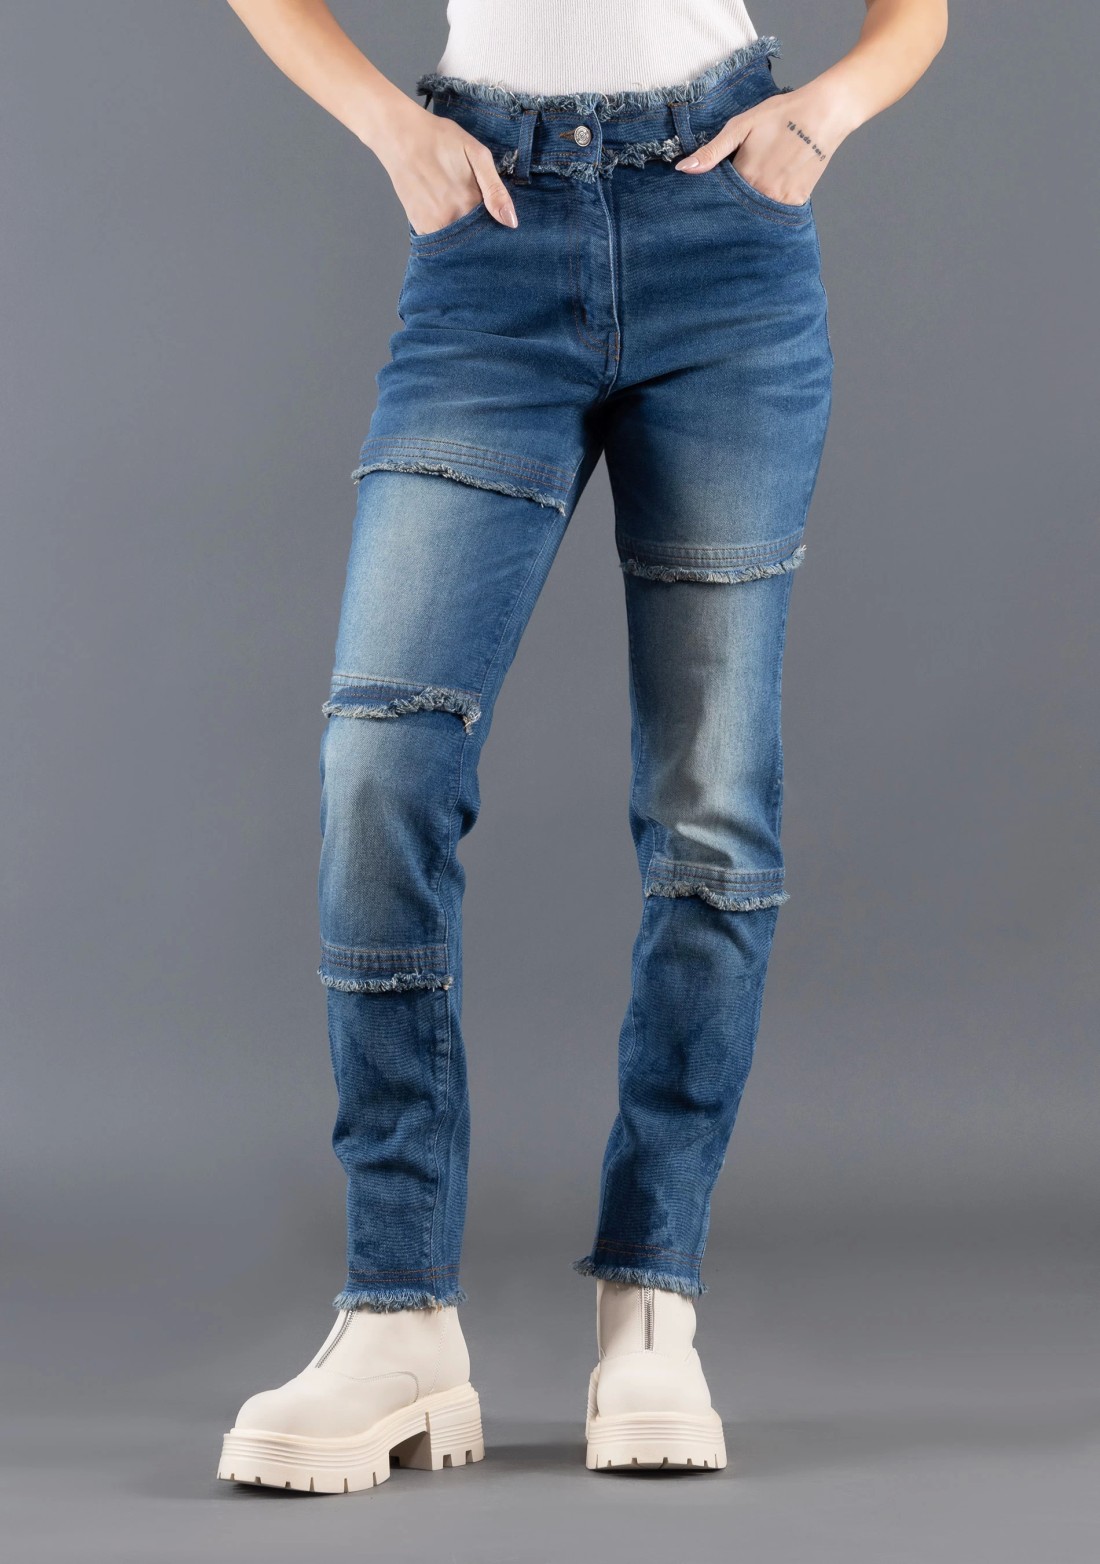 Rhysley Deep Blue Slim Fit Women's Fashion Jeans